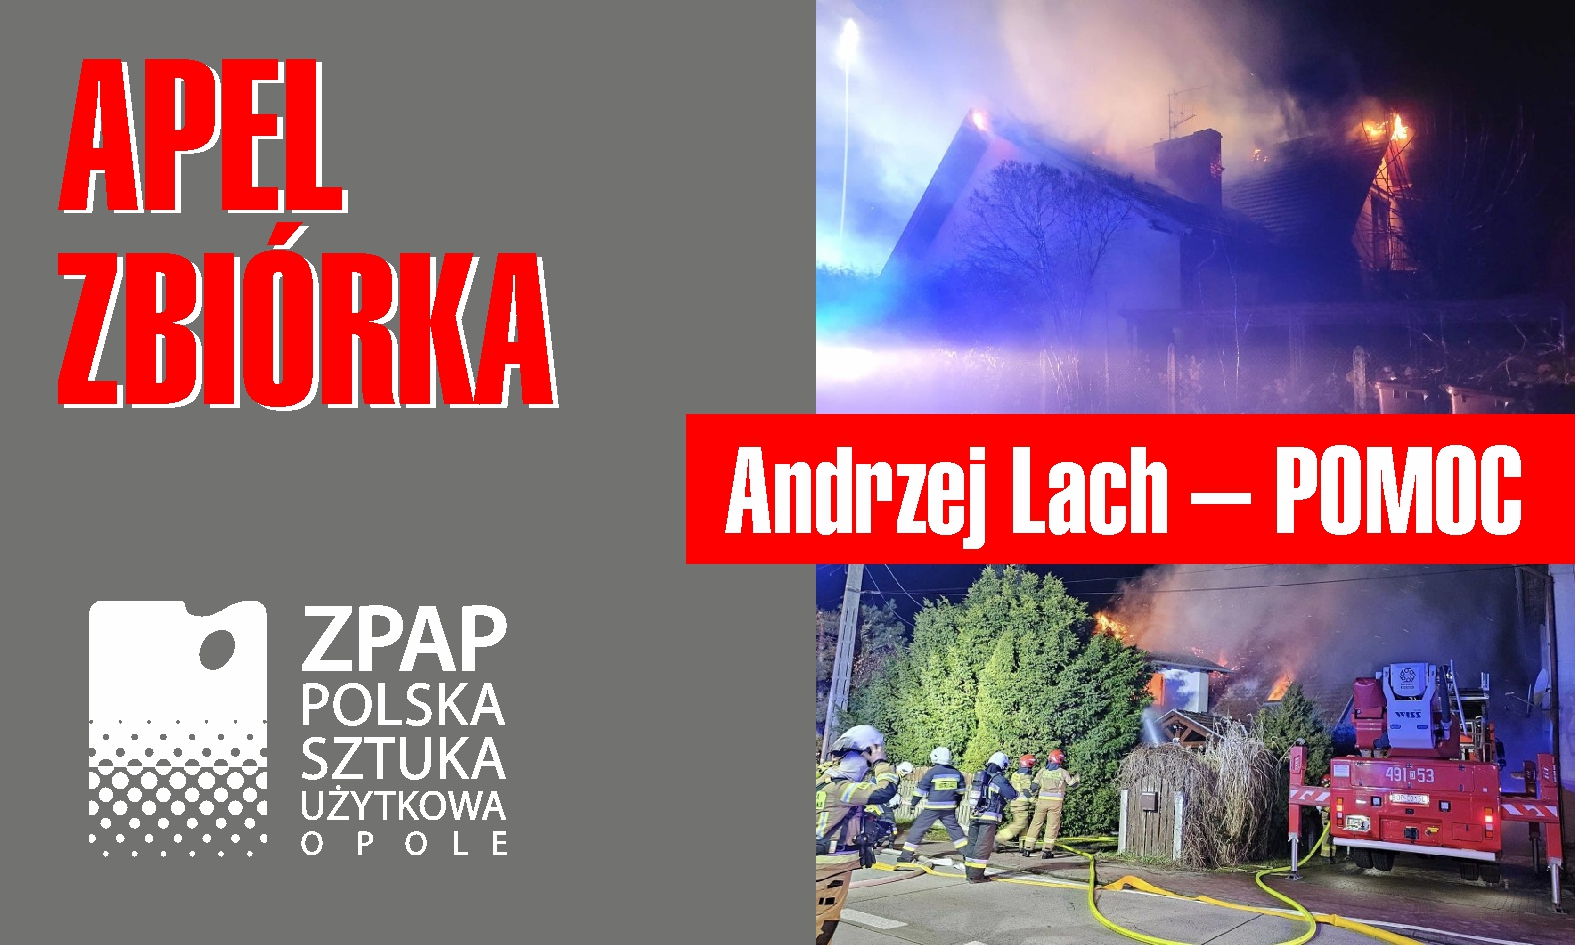 APEL ZBIÓRKA | Andrzej Lach – POMOC